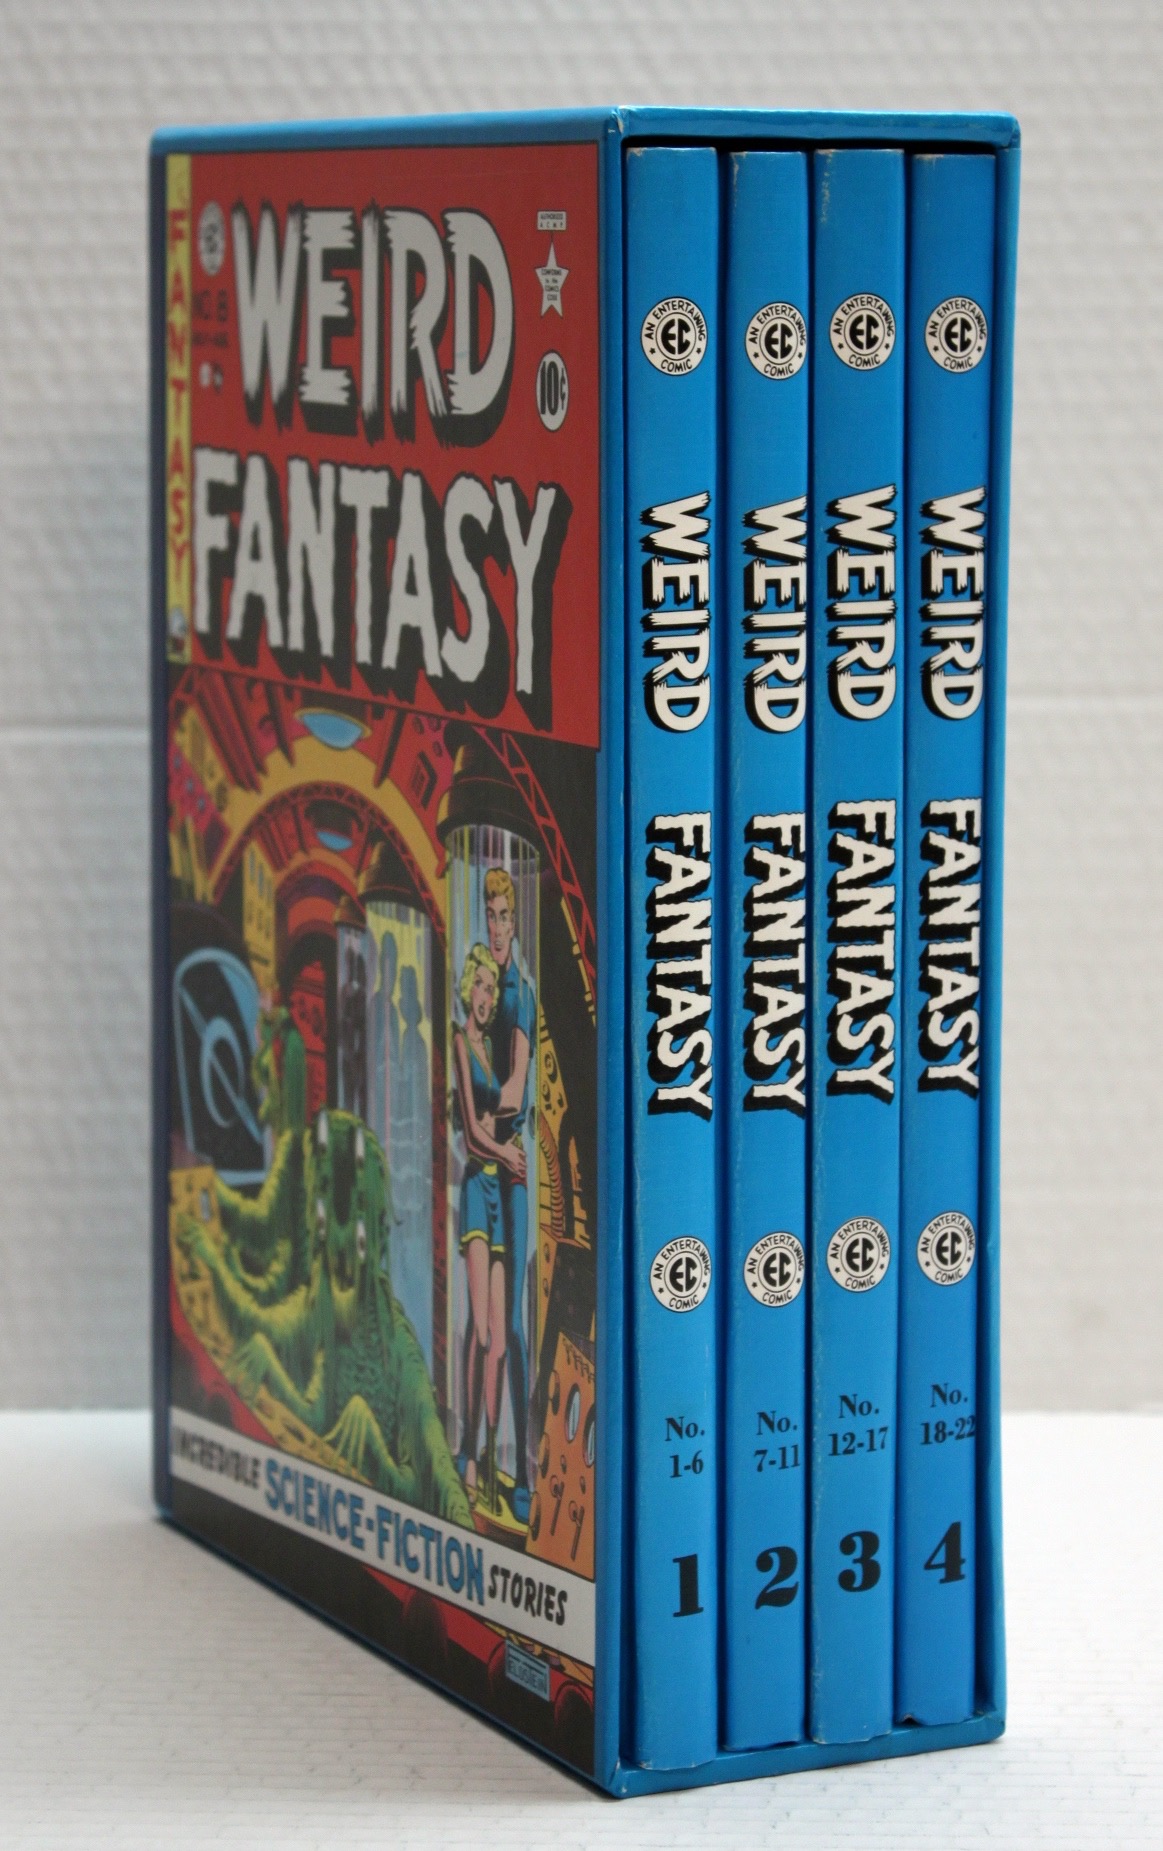 Weird Fantasy 4 Volume Set From 1 To 22 - 17482